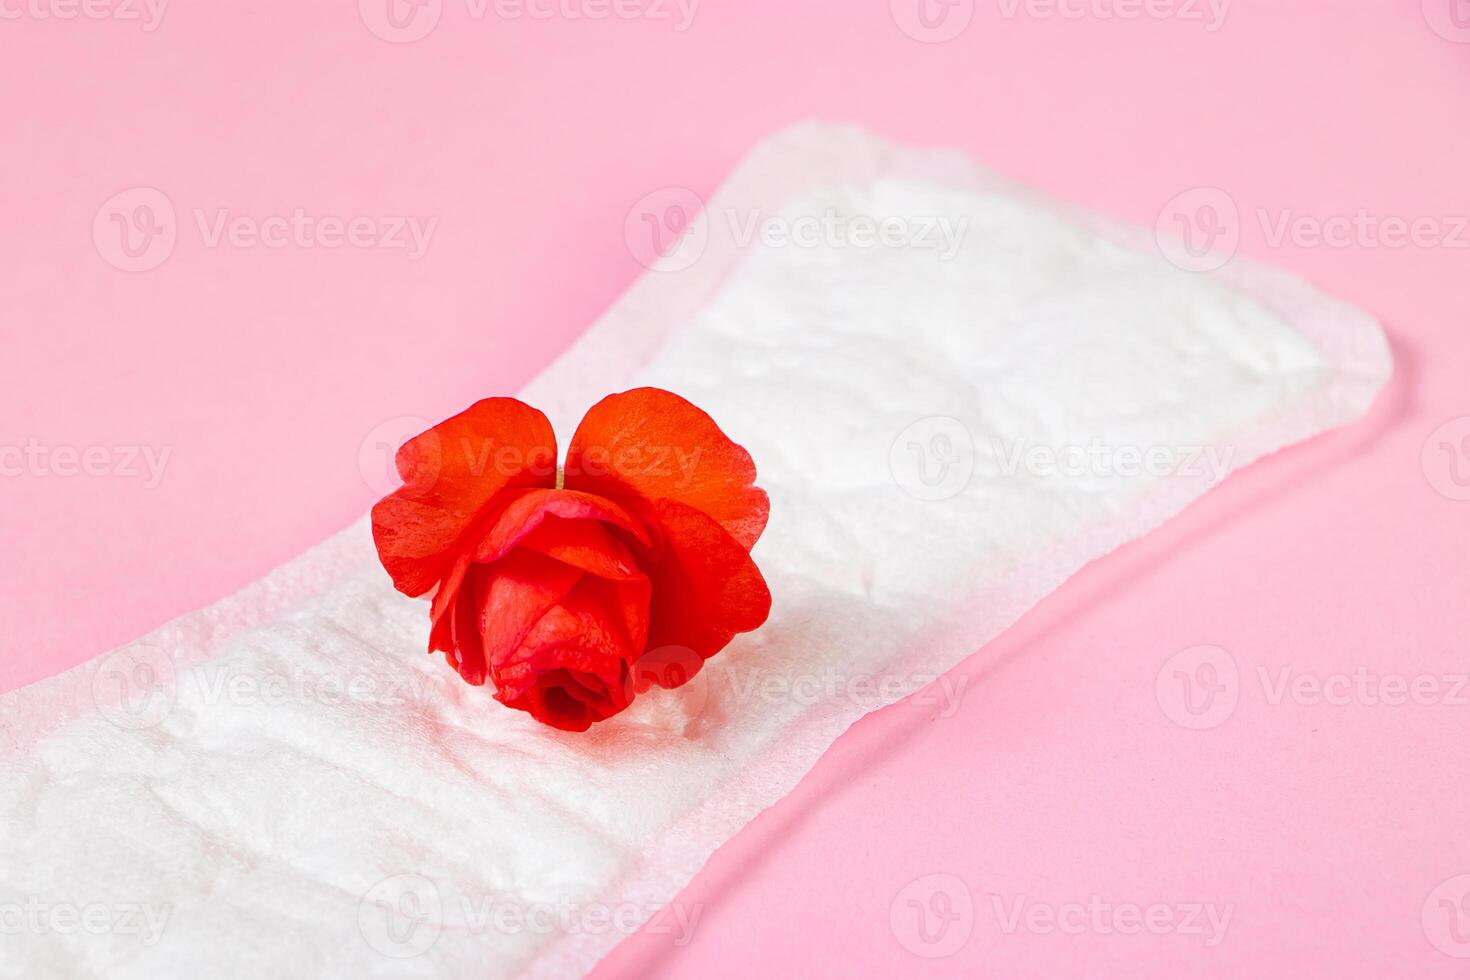 maandverband en rode bloem op roze achtergrond. menstruatie concept. foto